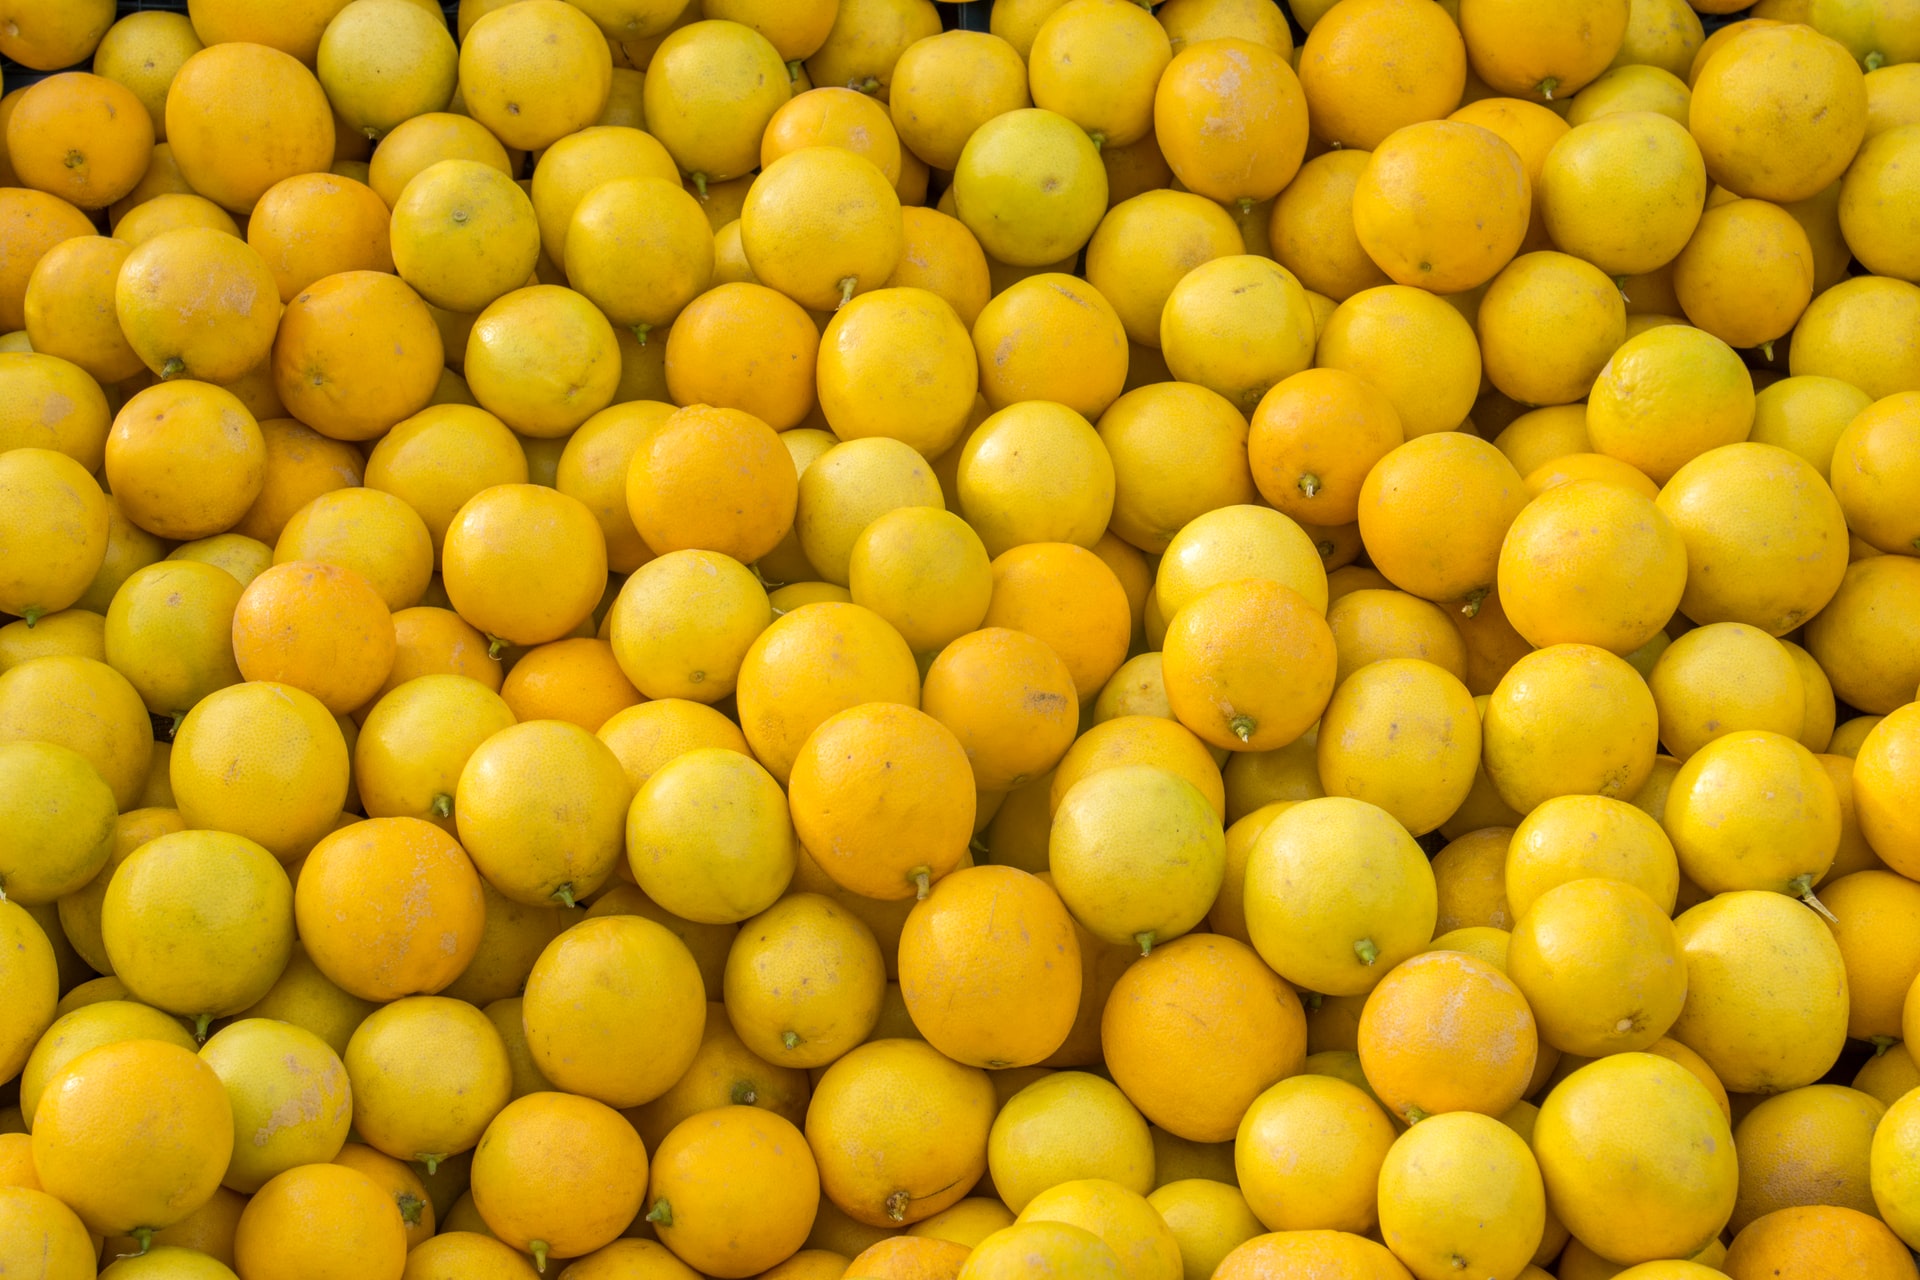 Limonu bileklerinize damlatın ve bekleyin ne oluyor? Limonla gelen süper etki